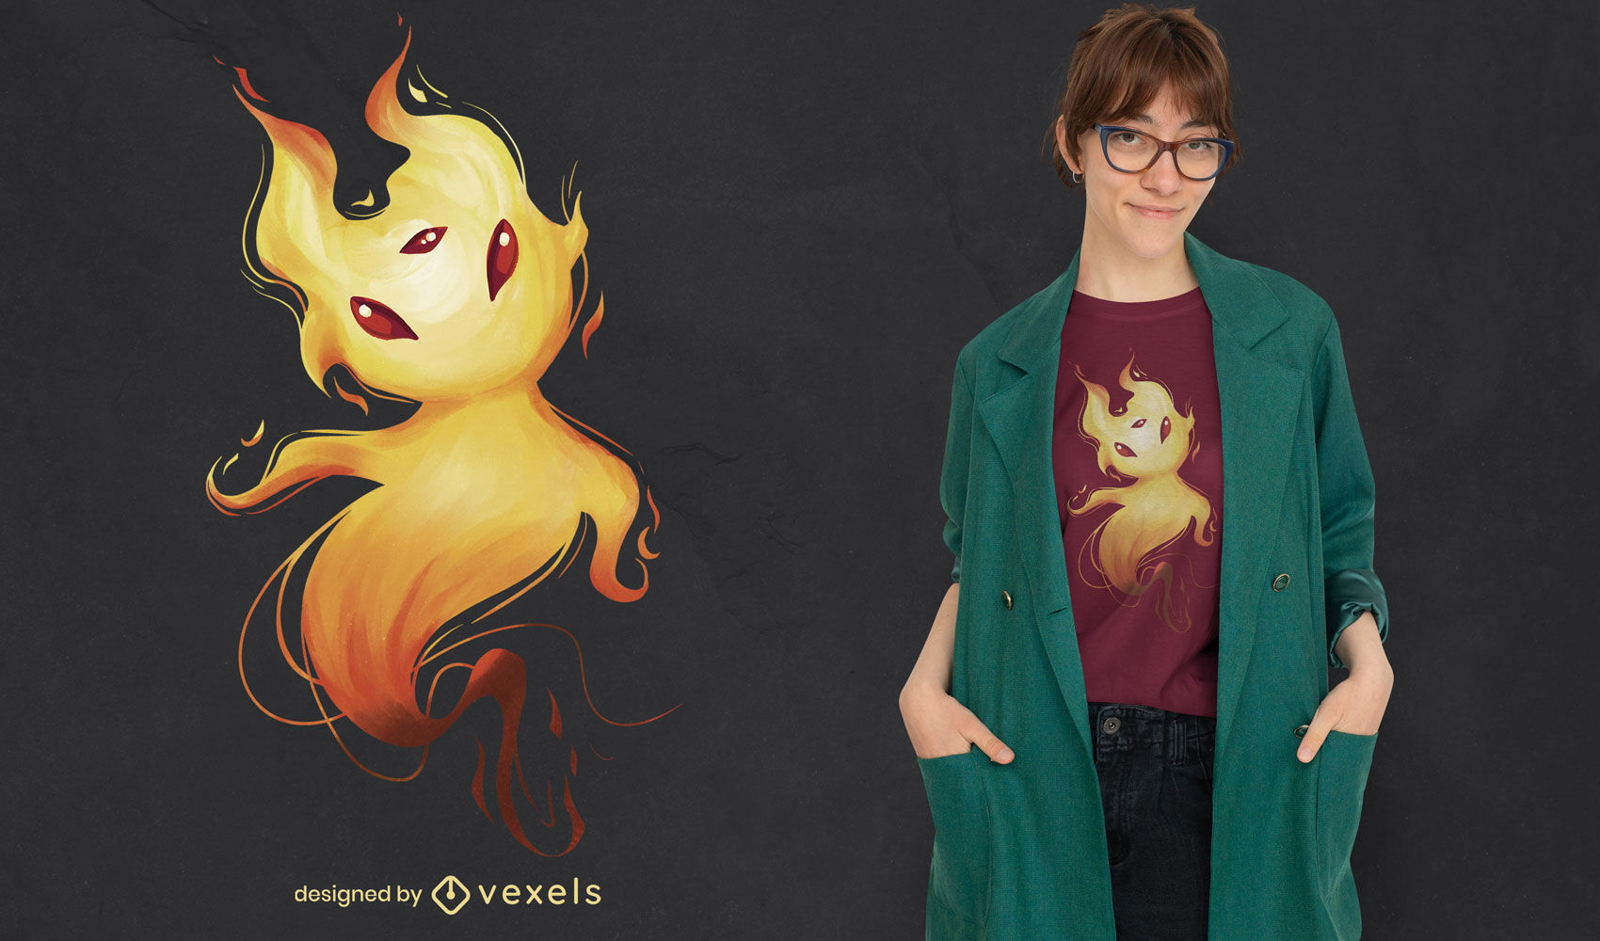 Magical fire spirit creature t-shirt psd